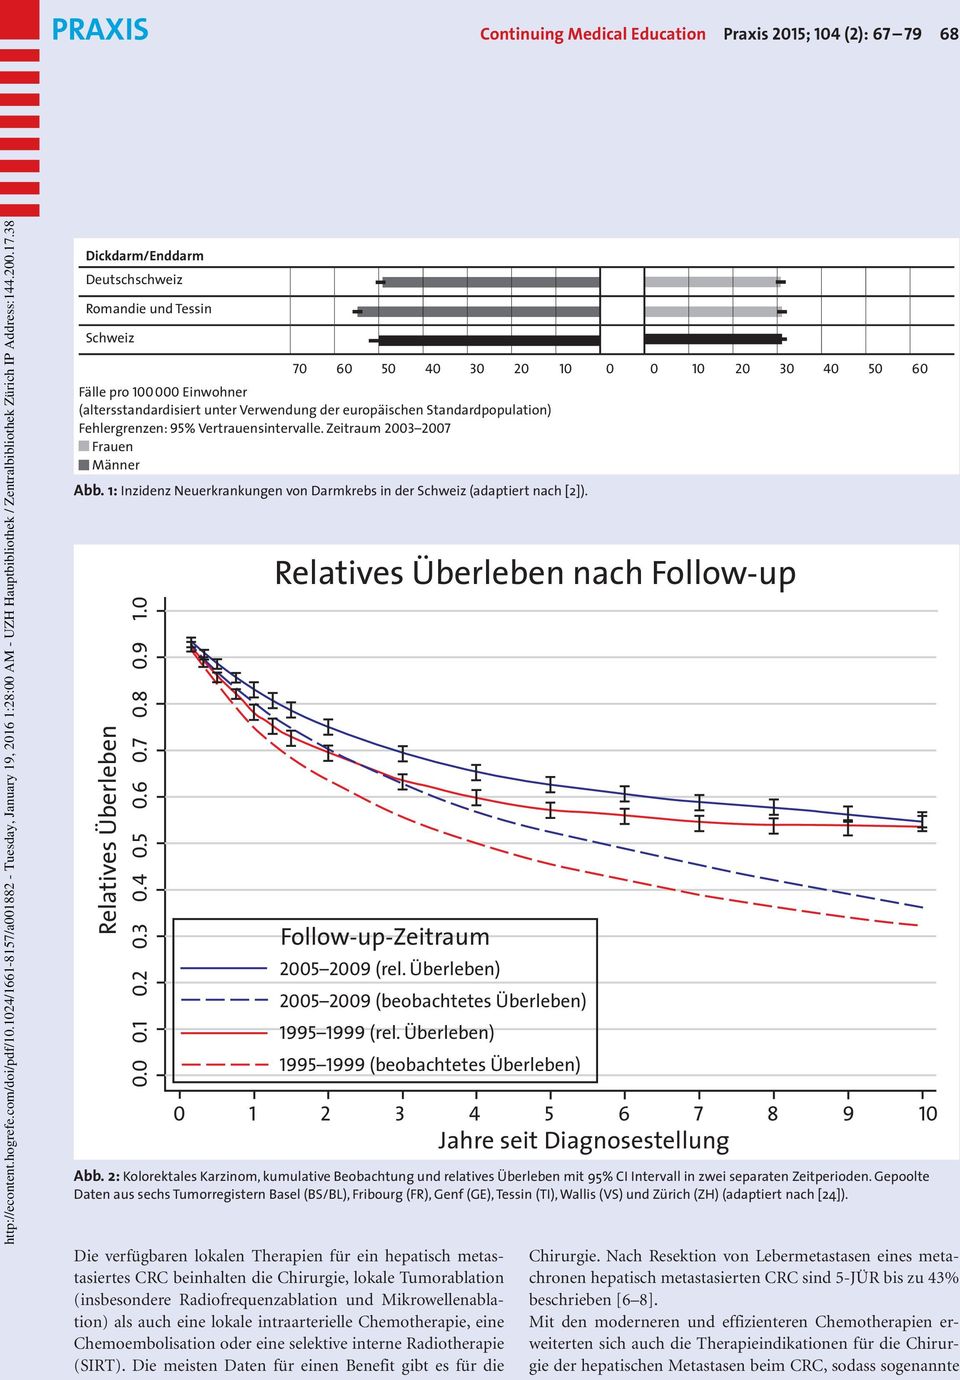 1: Inzidenz Neuerkrankungen von Darmkrebs in der Schweiz (adaptiert nach [2]). Relatives Überleben 0.9 1.0 0.7 0.8 0.6 0.5 0.4 0.3 0.2 0.1 0.